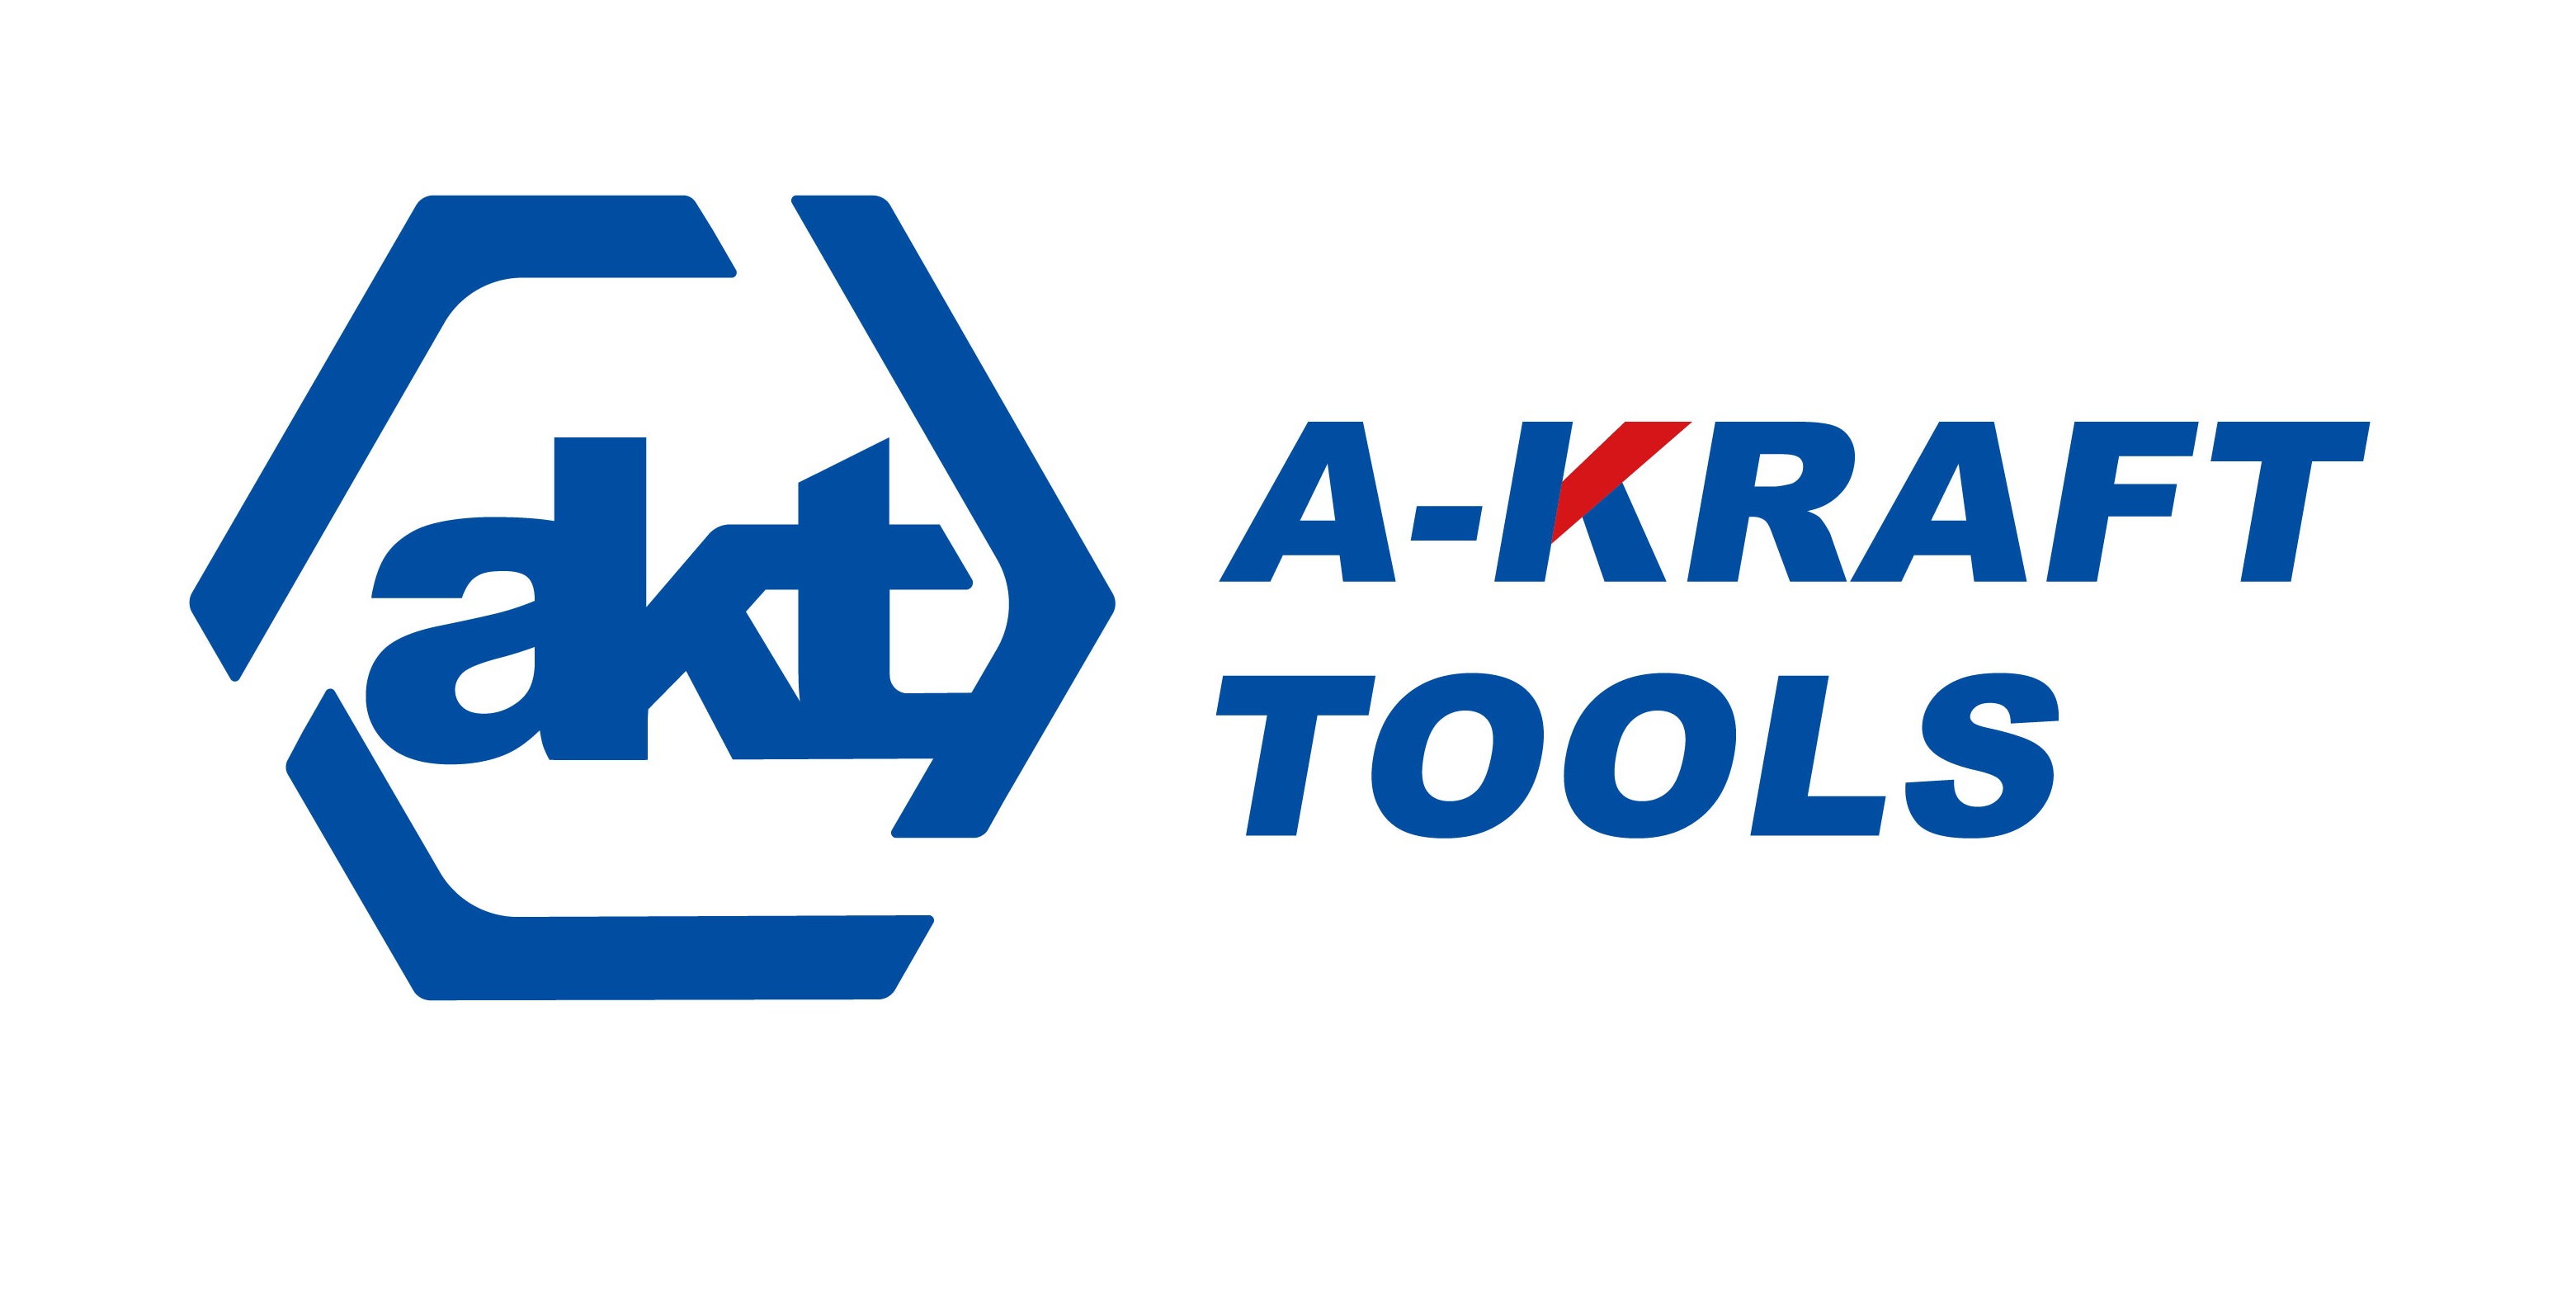 A-KRAFT TOOLS MANUFACTURING CO LTD